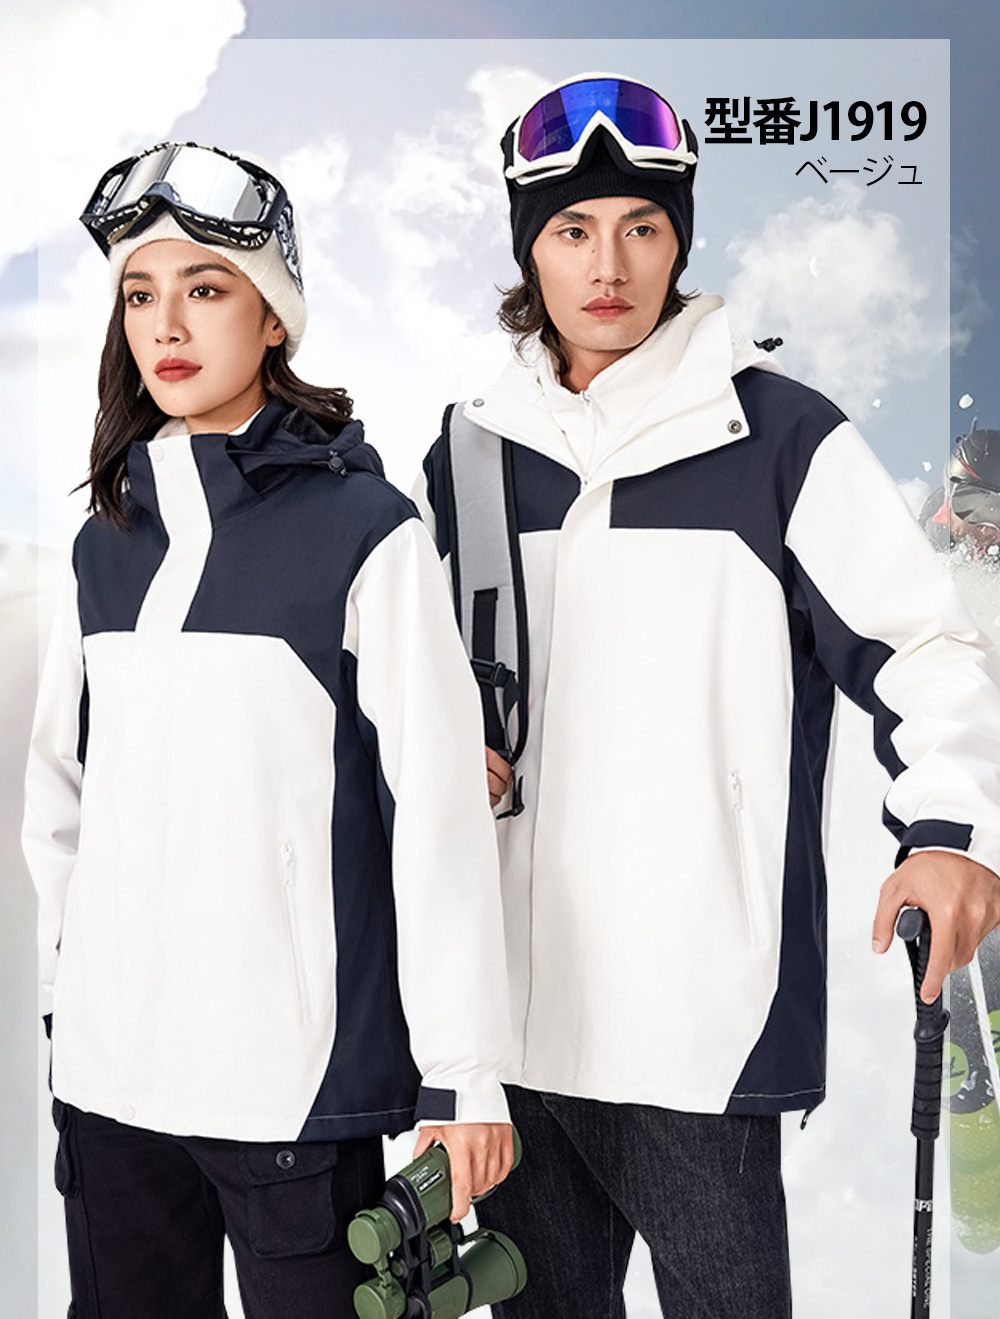 スノージャケット スキーウェア マウンテンジャケット トップス レディース メンズ 単品 スノボウェア 雪遊び 防寒 はっ水 冬 白 黒 釣り 登山  旅行 男女兼用